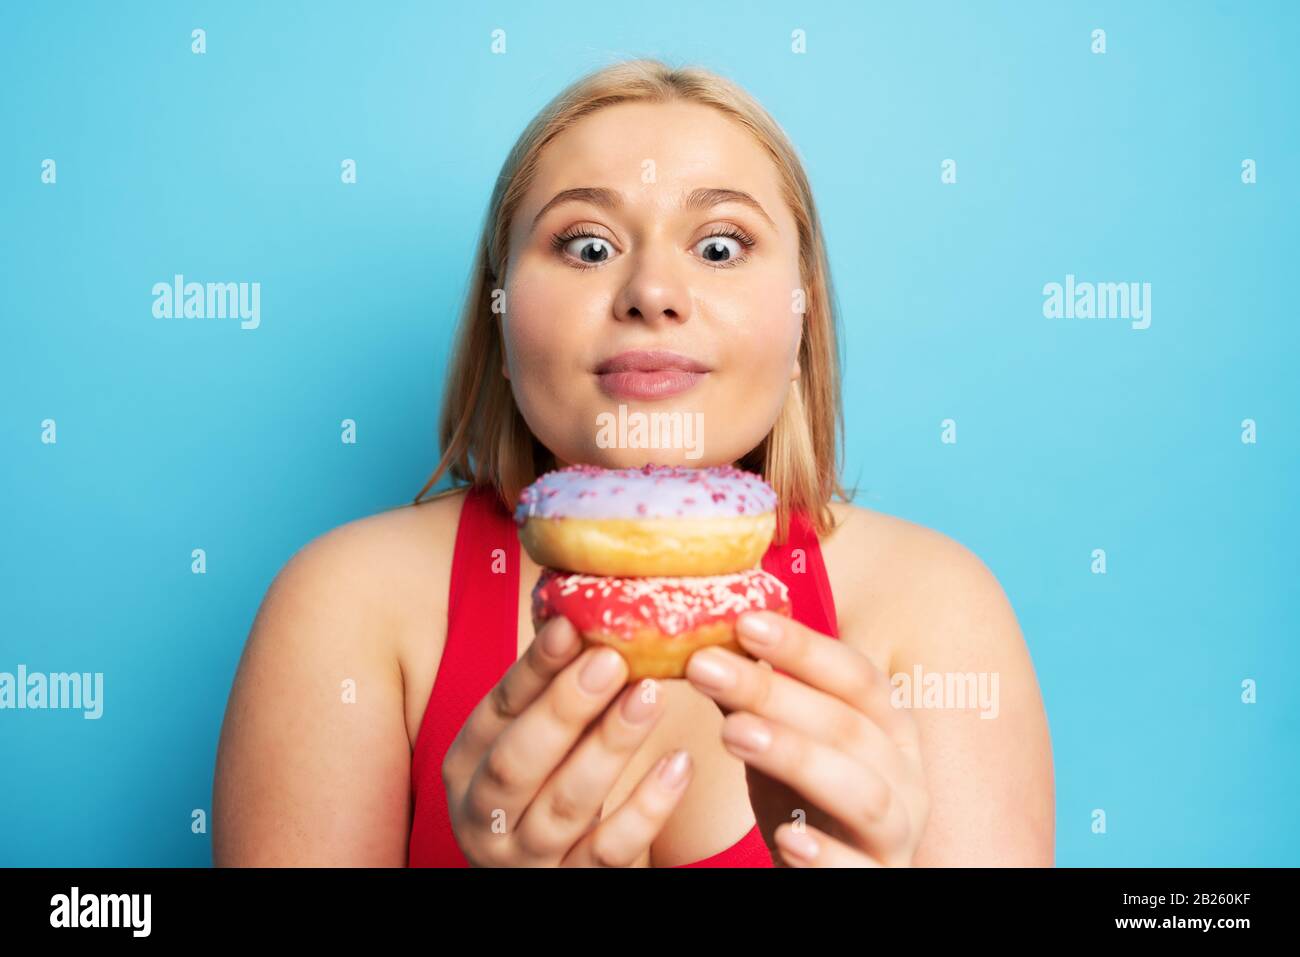 Fat ragazza pensa di mangiare ciambelle invece di fare palestra. Concetto di indecisione e dubbio Foto Stock